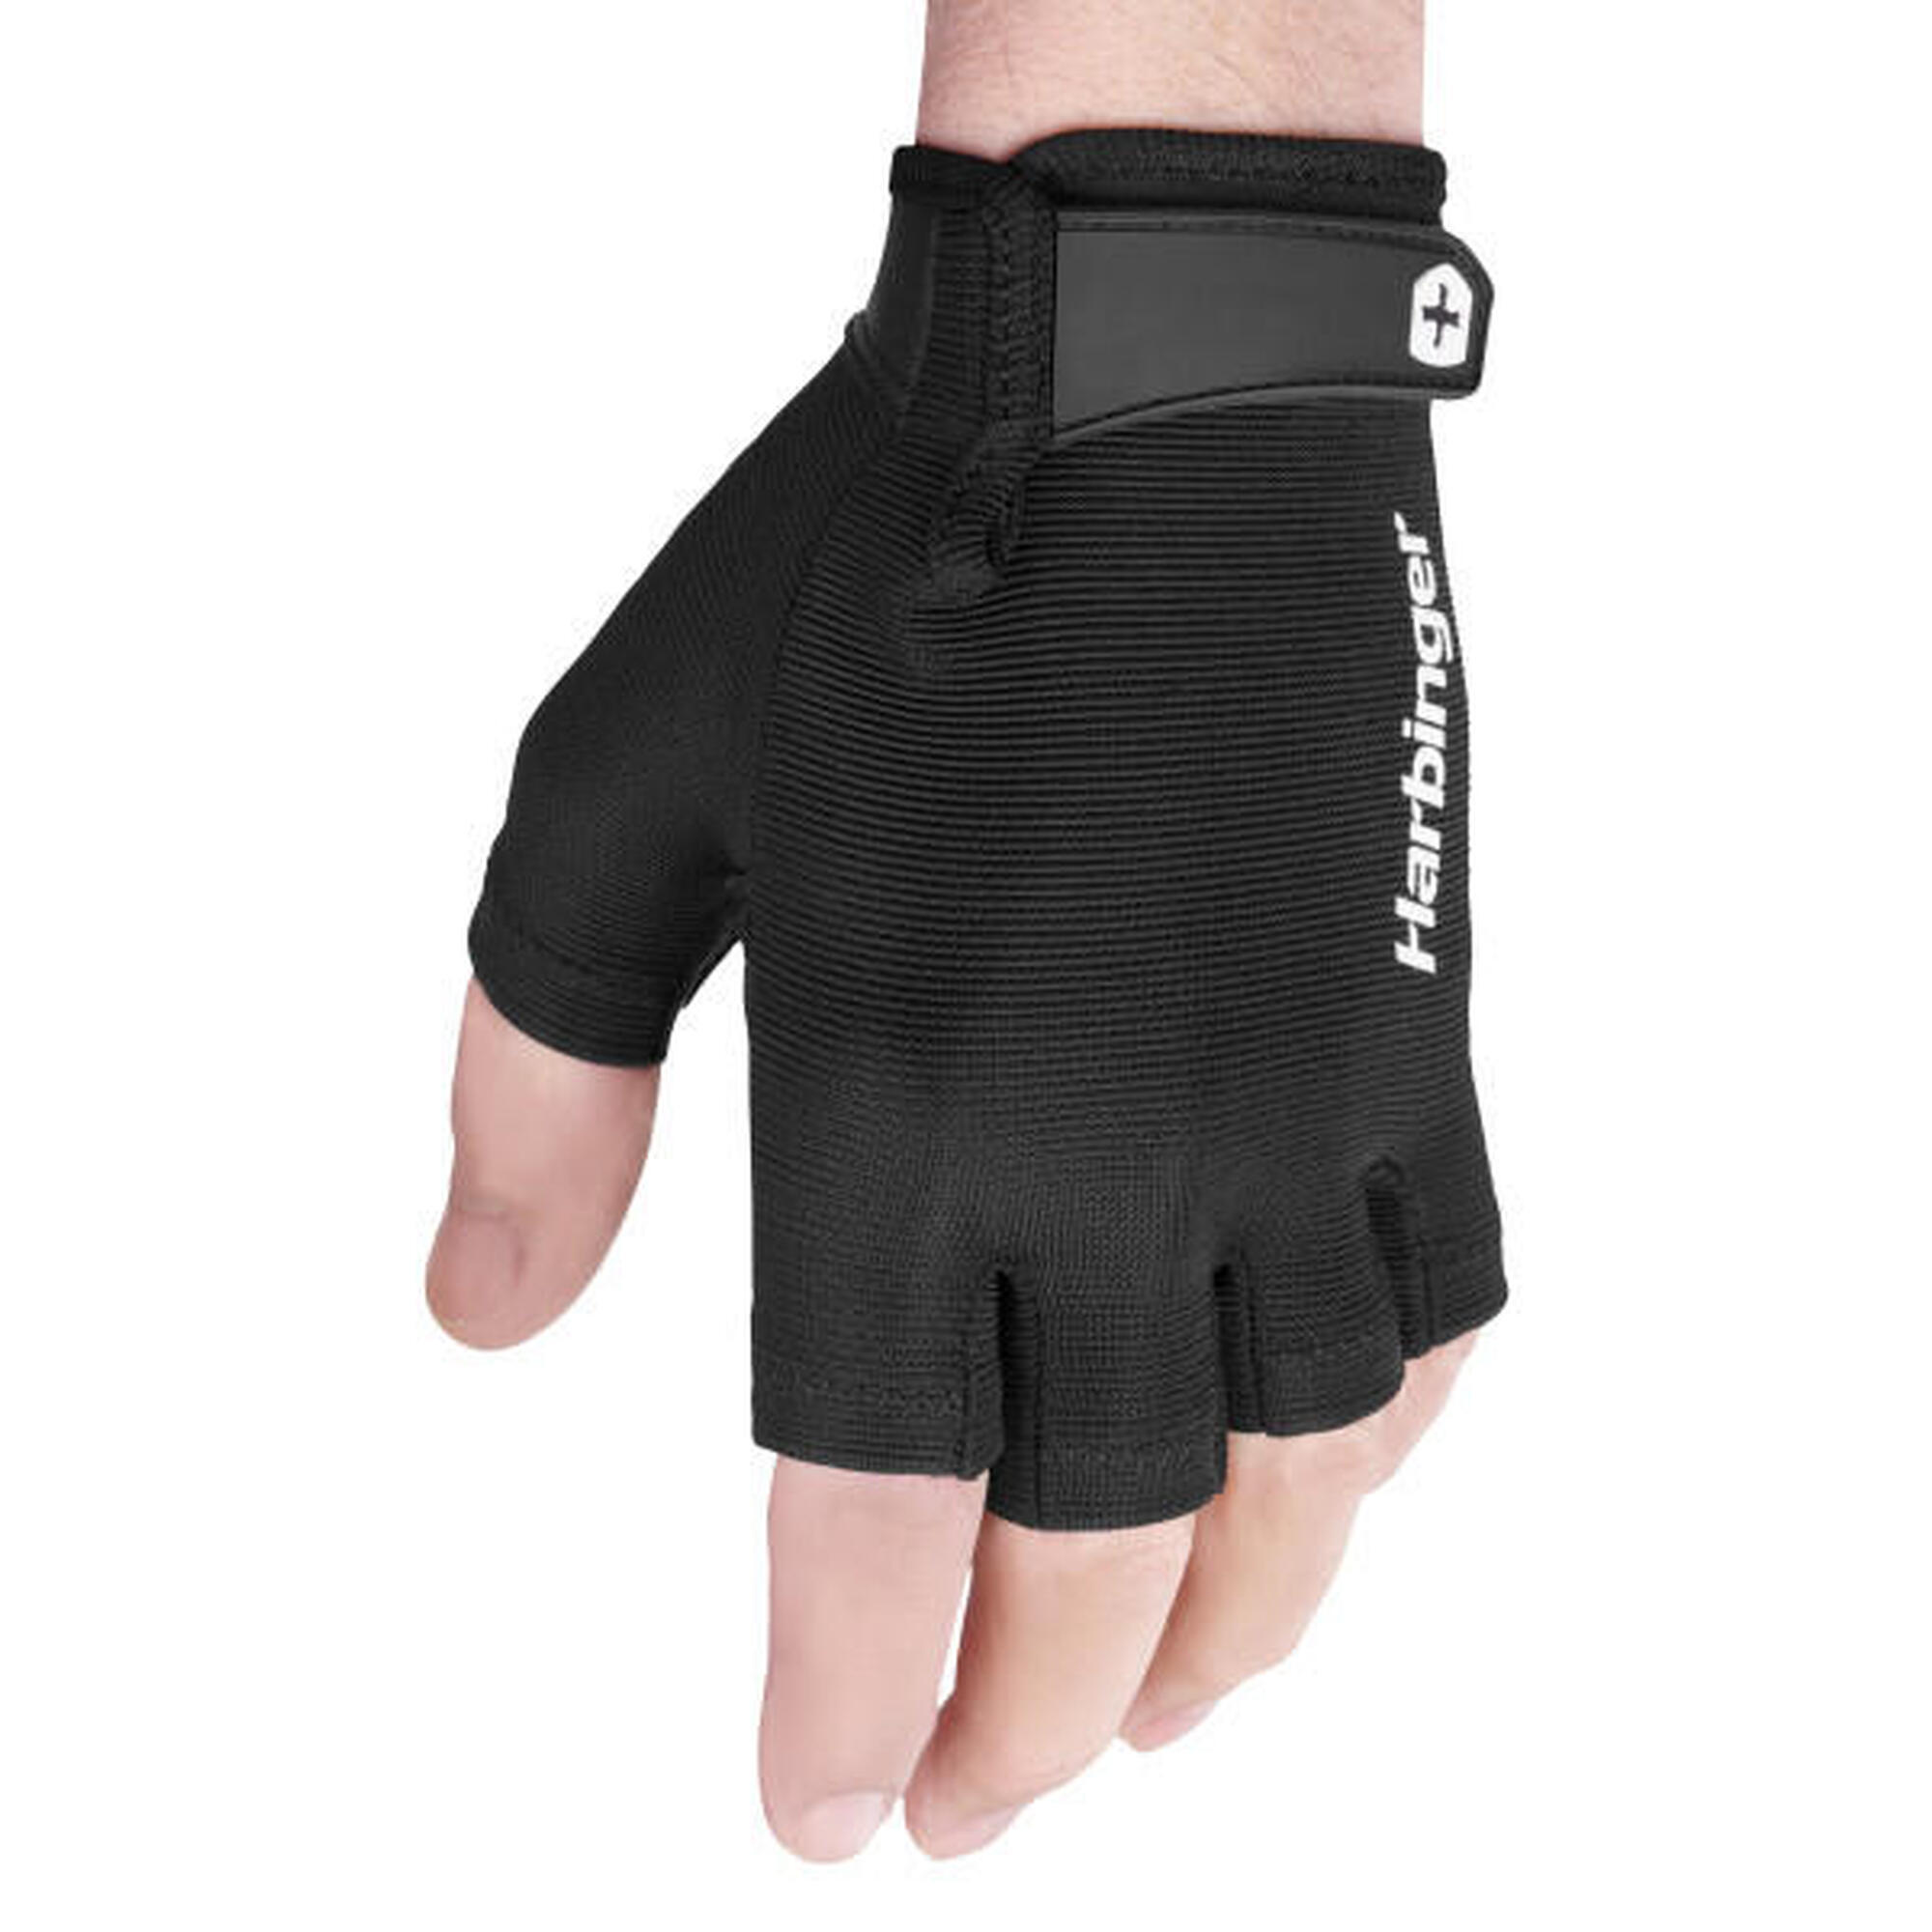 Harbinger gants d'haltérophilie avec prise ferme, confort optimal taille S Noir